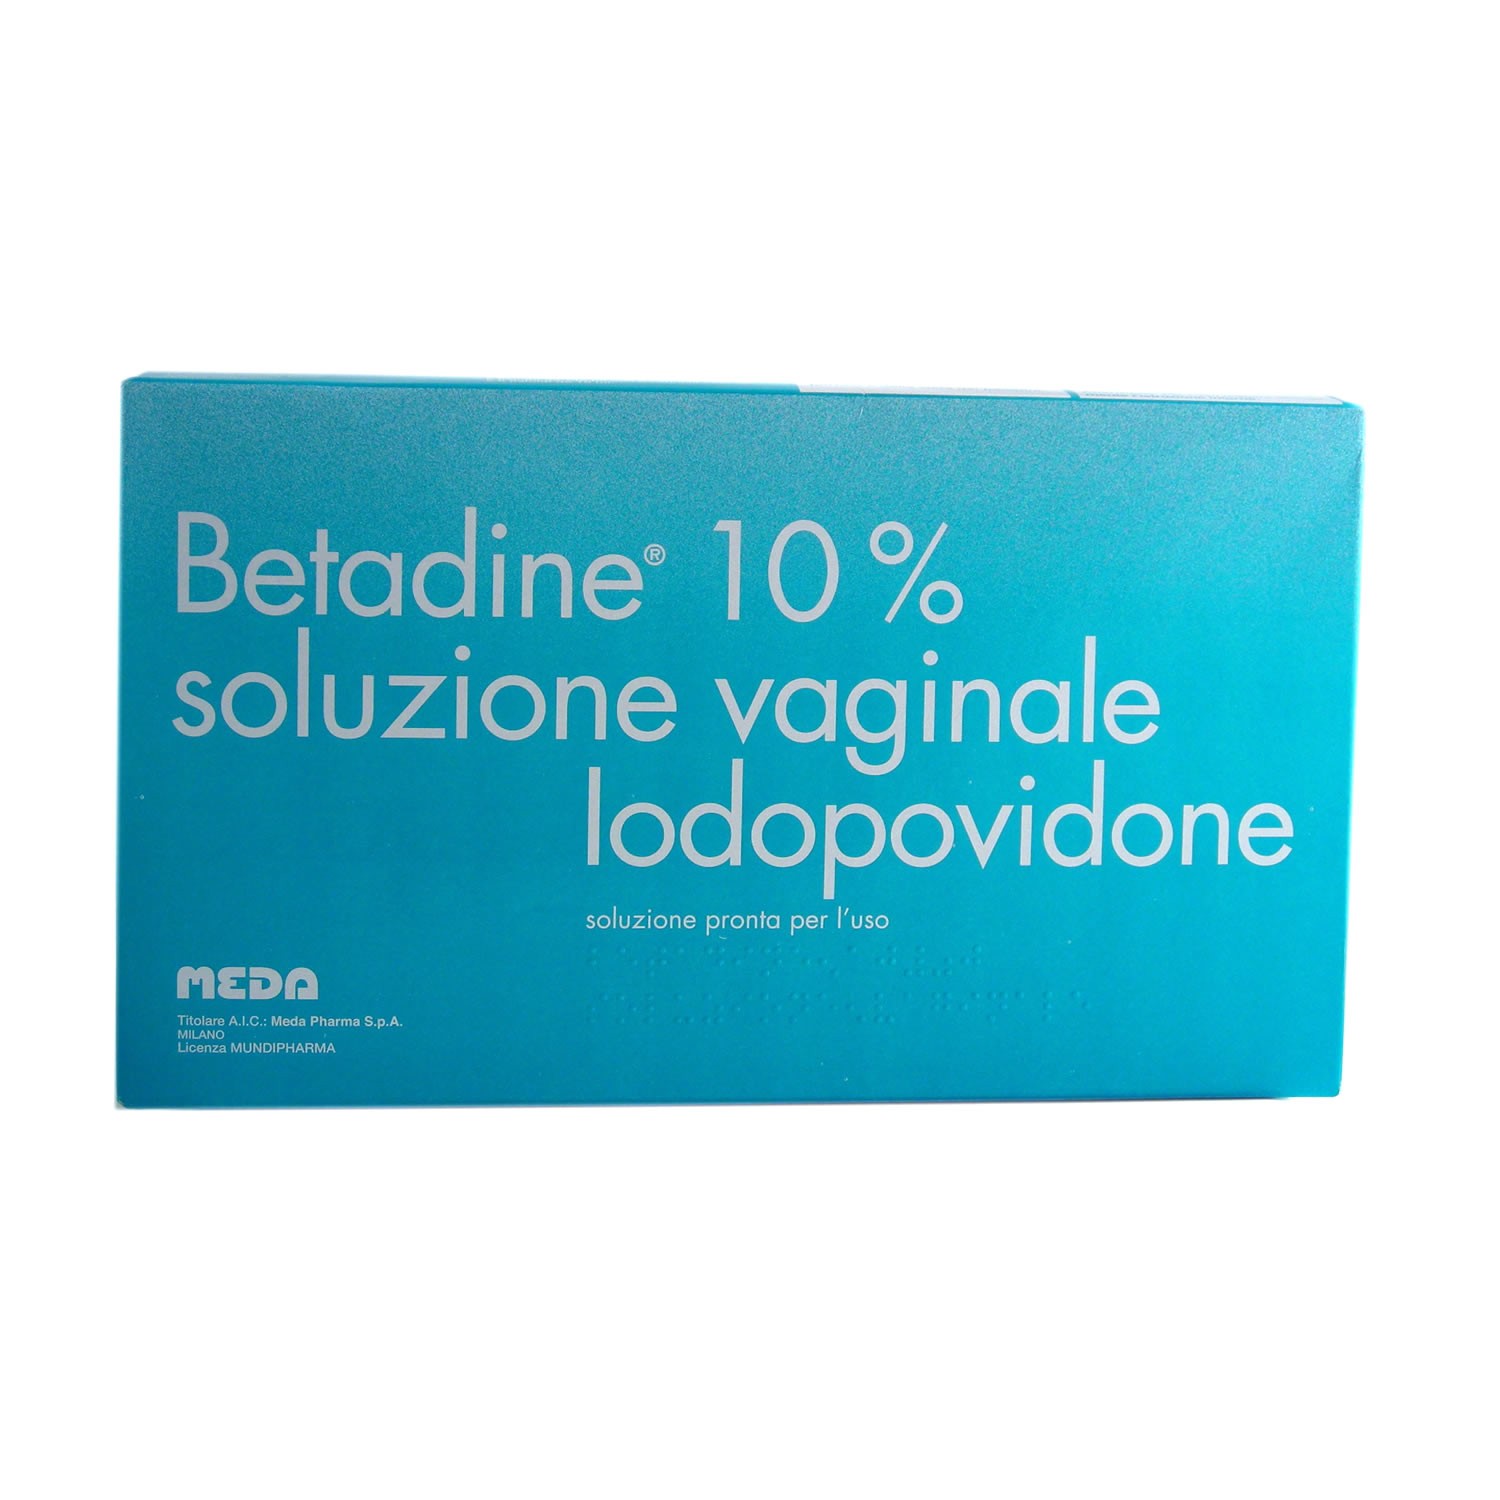 Betadine 10%*Soluzione Vaginale 5 flaconi+5 fialoidi+5 cannule vaginali